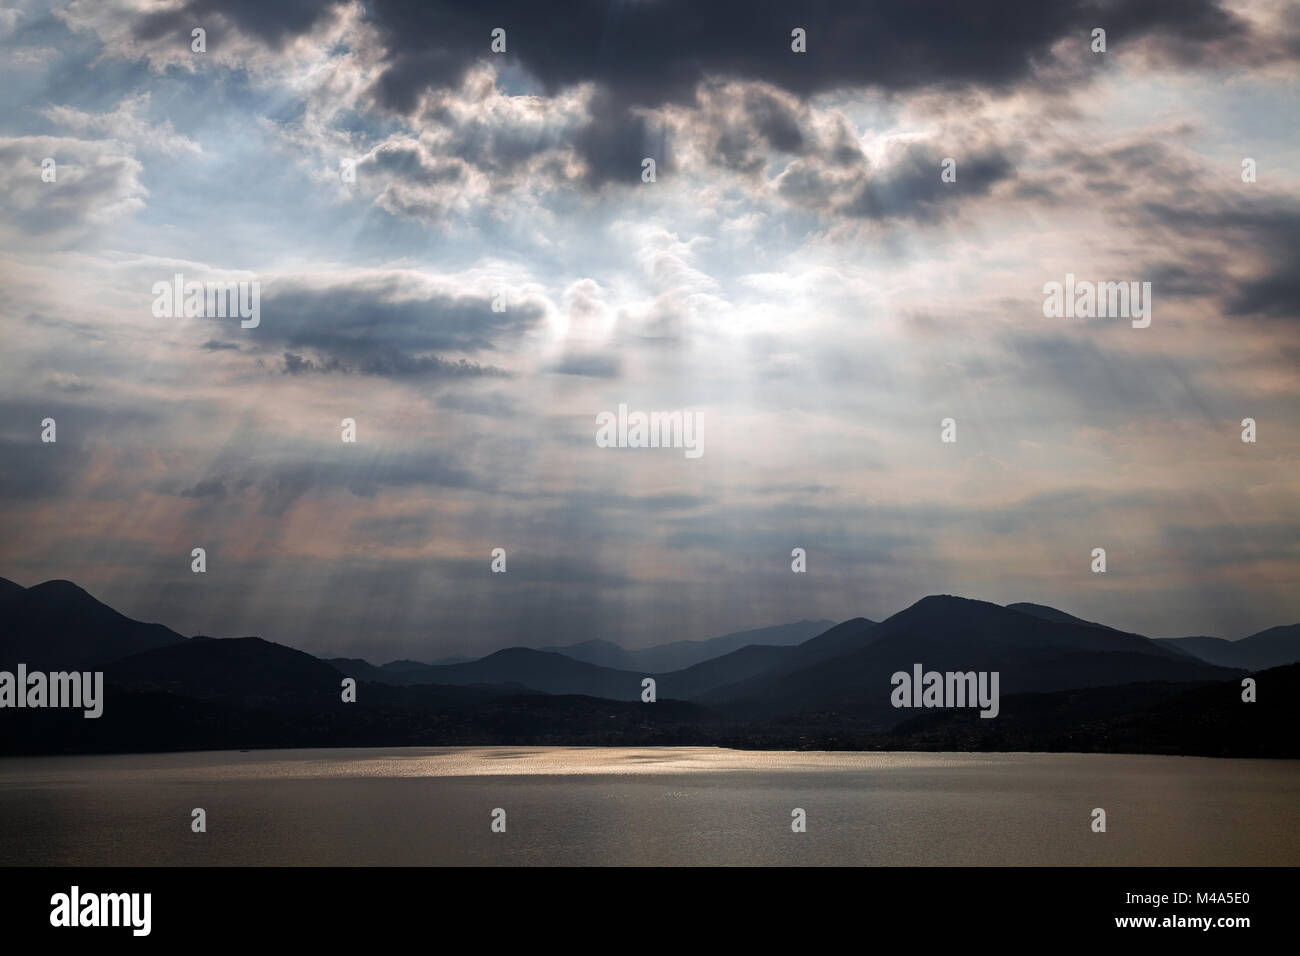 Dramatische Wolkenbildung, Sonnenstrahlen hinter dunklen Wolken, Gewitter Atmosphäre, Lago Maggiore, Verbano-Cusio-Ossola Provinz Stockfoto